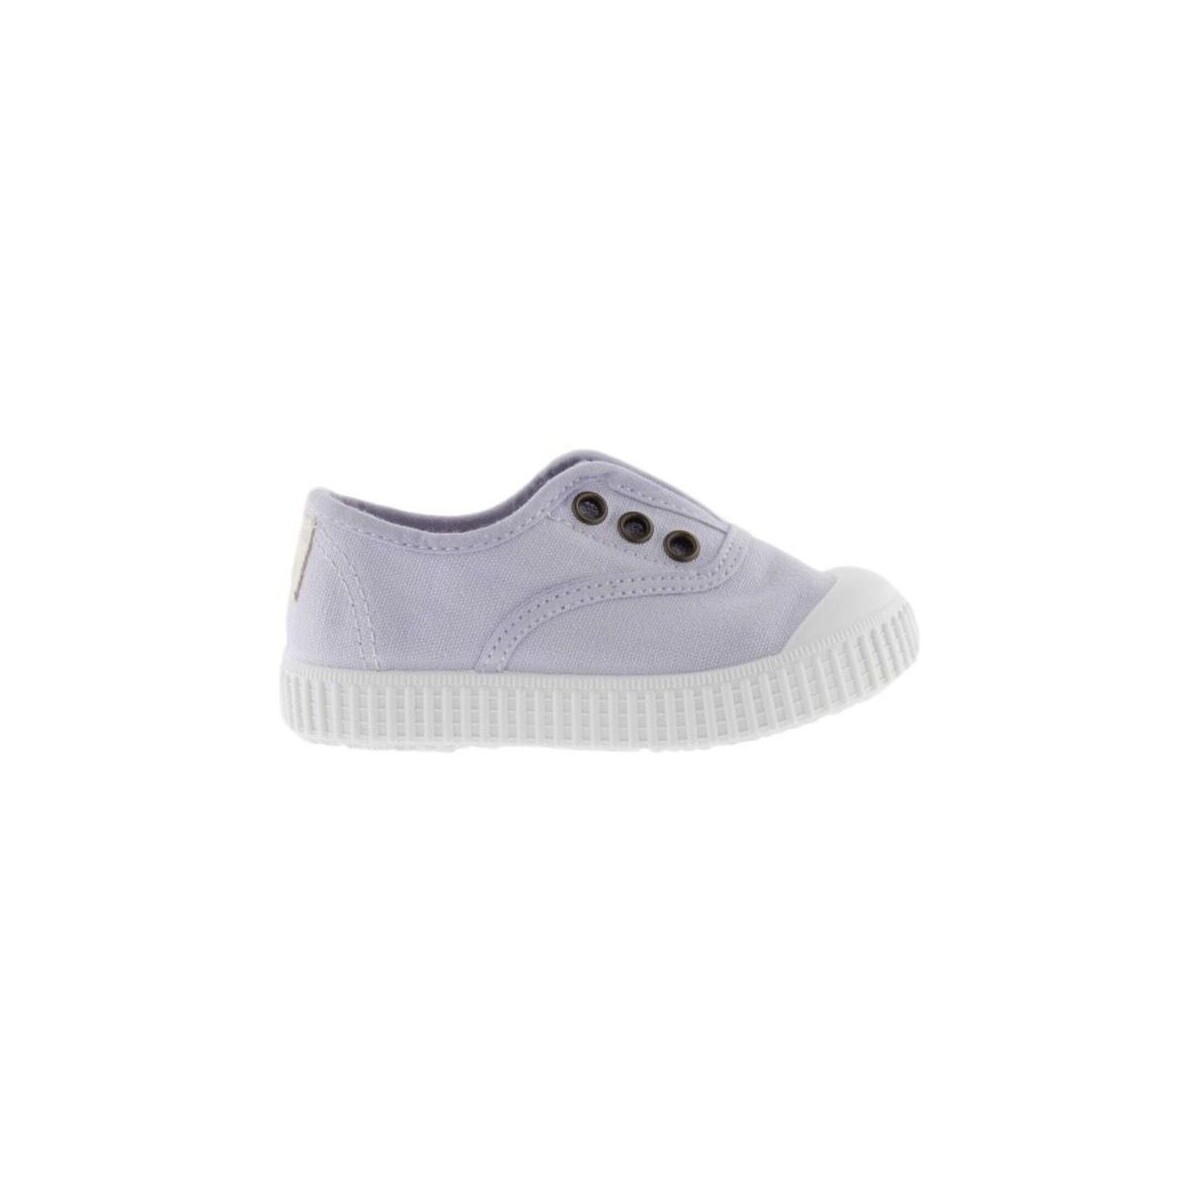 Schuhe Kinder Derby-Schuhe Victoria Baby 06627 - Lirio Violett